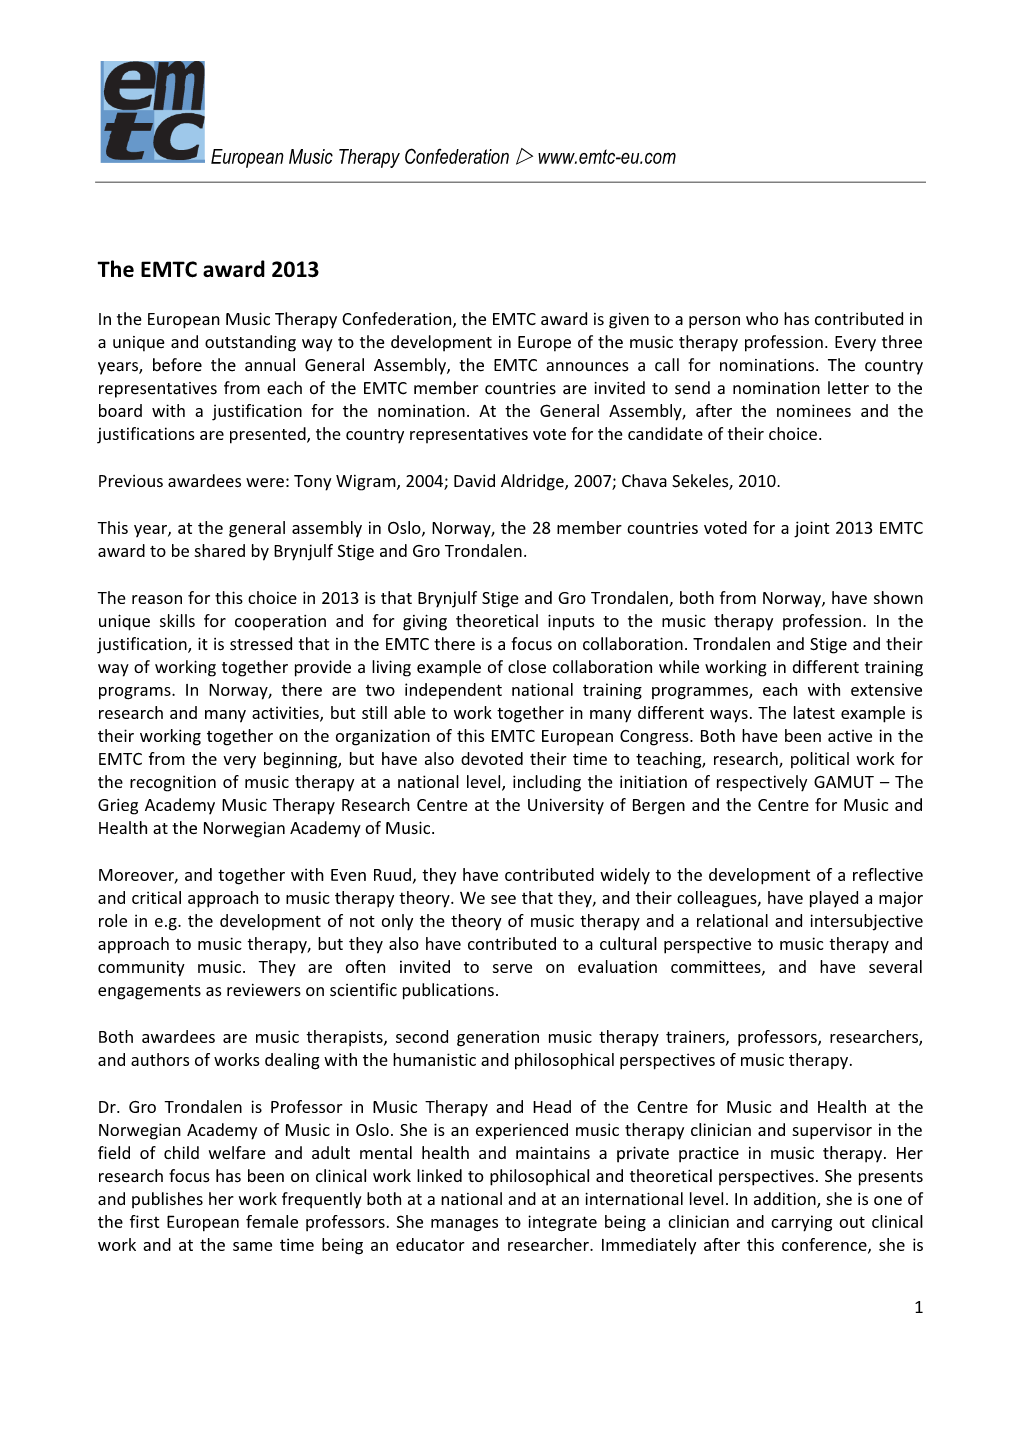 The EMTC Award 2013